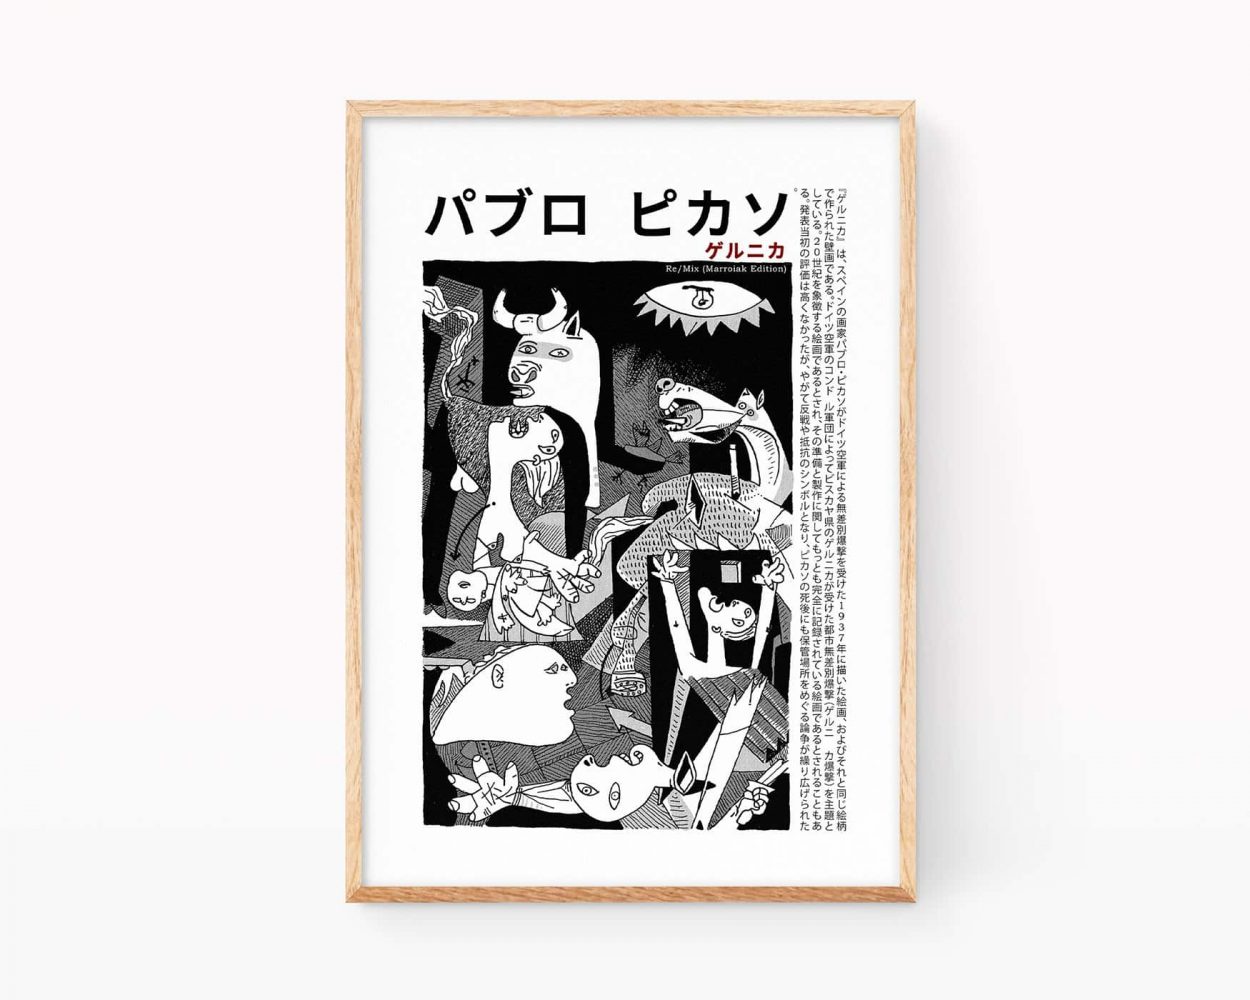 Cuadro para enmarcar con un diseño en japonés de la pintura de Pablo picasso el Guernica, obra maestra del cubismo. Arte de vanguardia. Edición decorativa en blanco y negro.